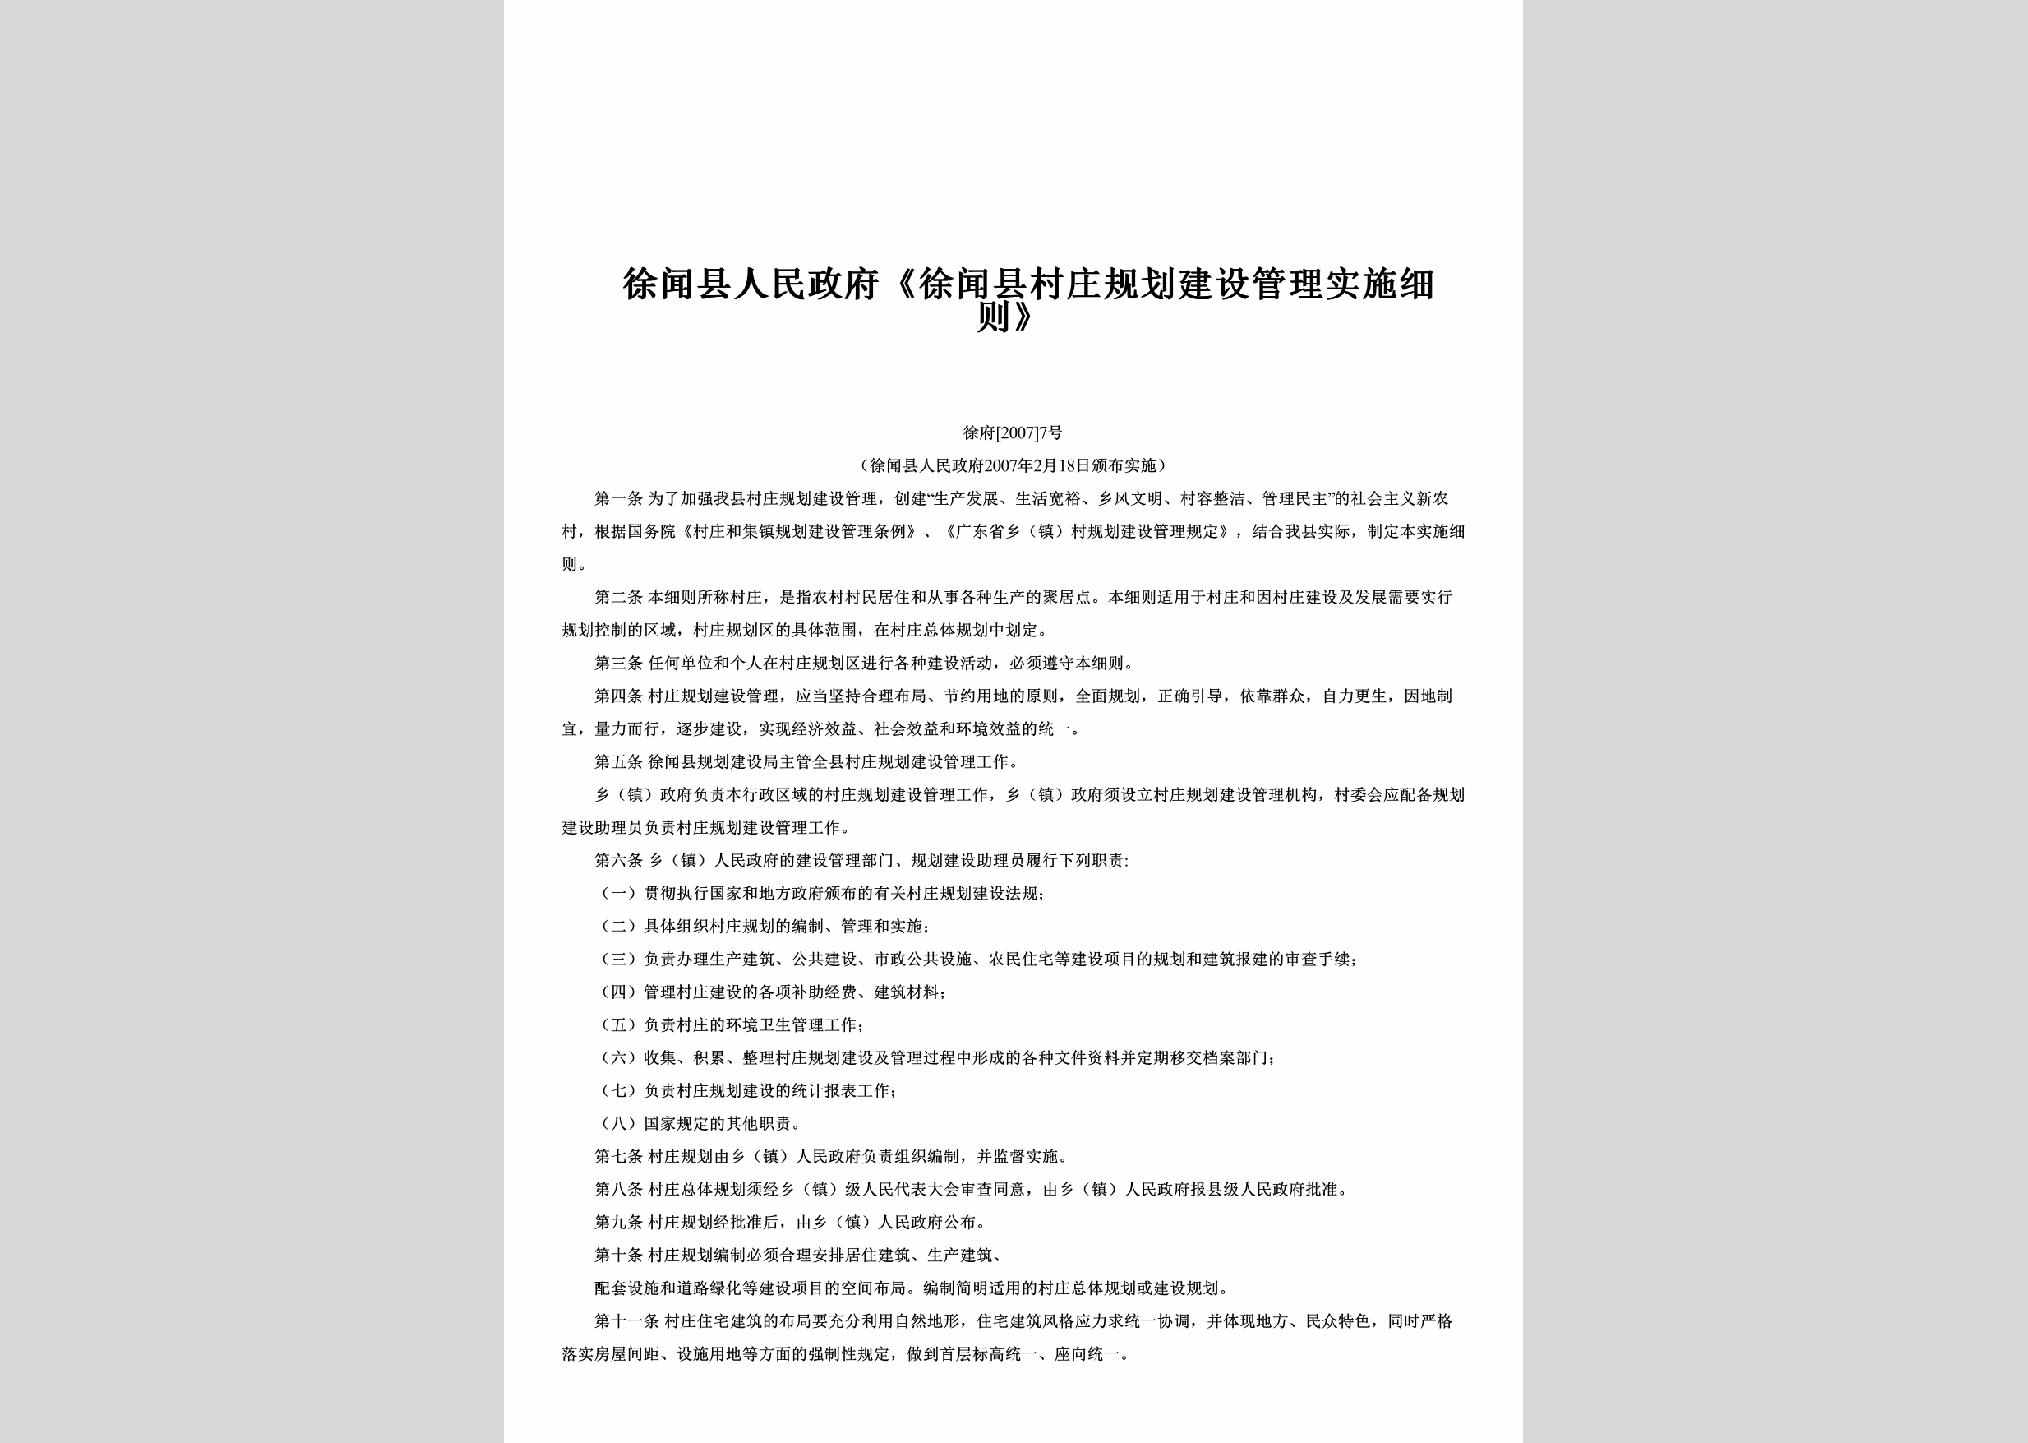 徐府[2007]7号：《徐闻县村庄规划建设管理实施细则》